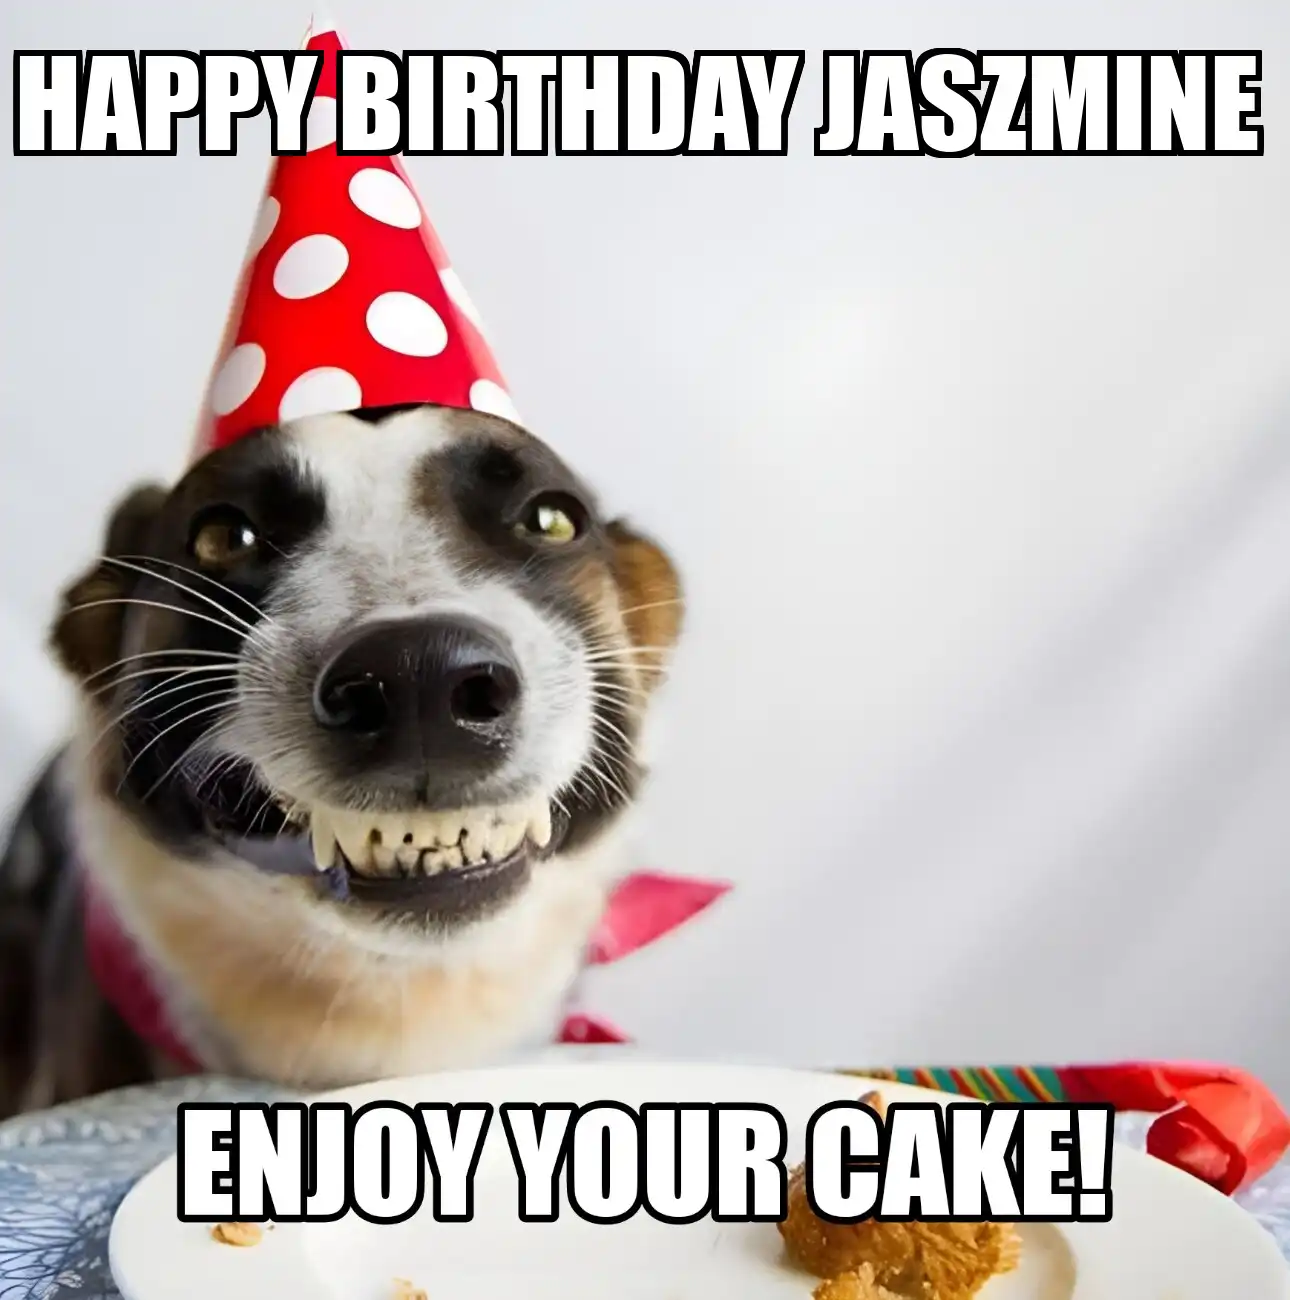 Happy Birthday Jaszmine Enjoy Your Cake Dog Meme